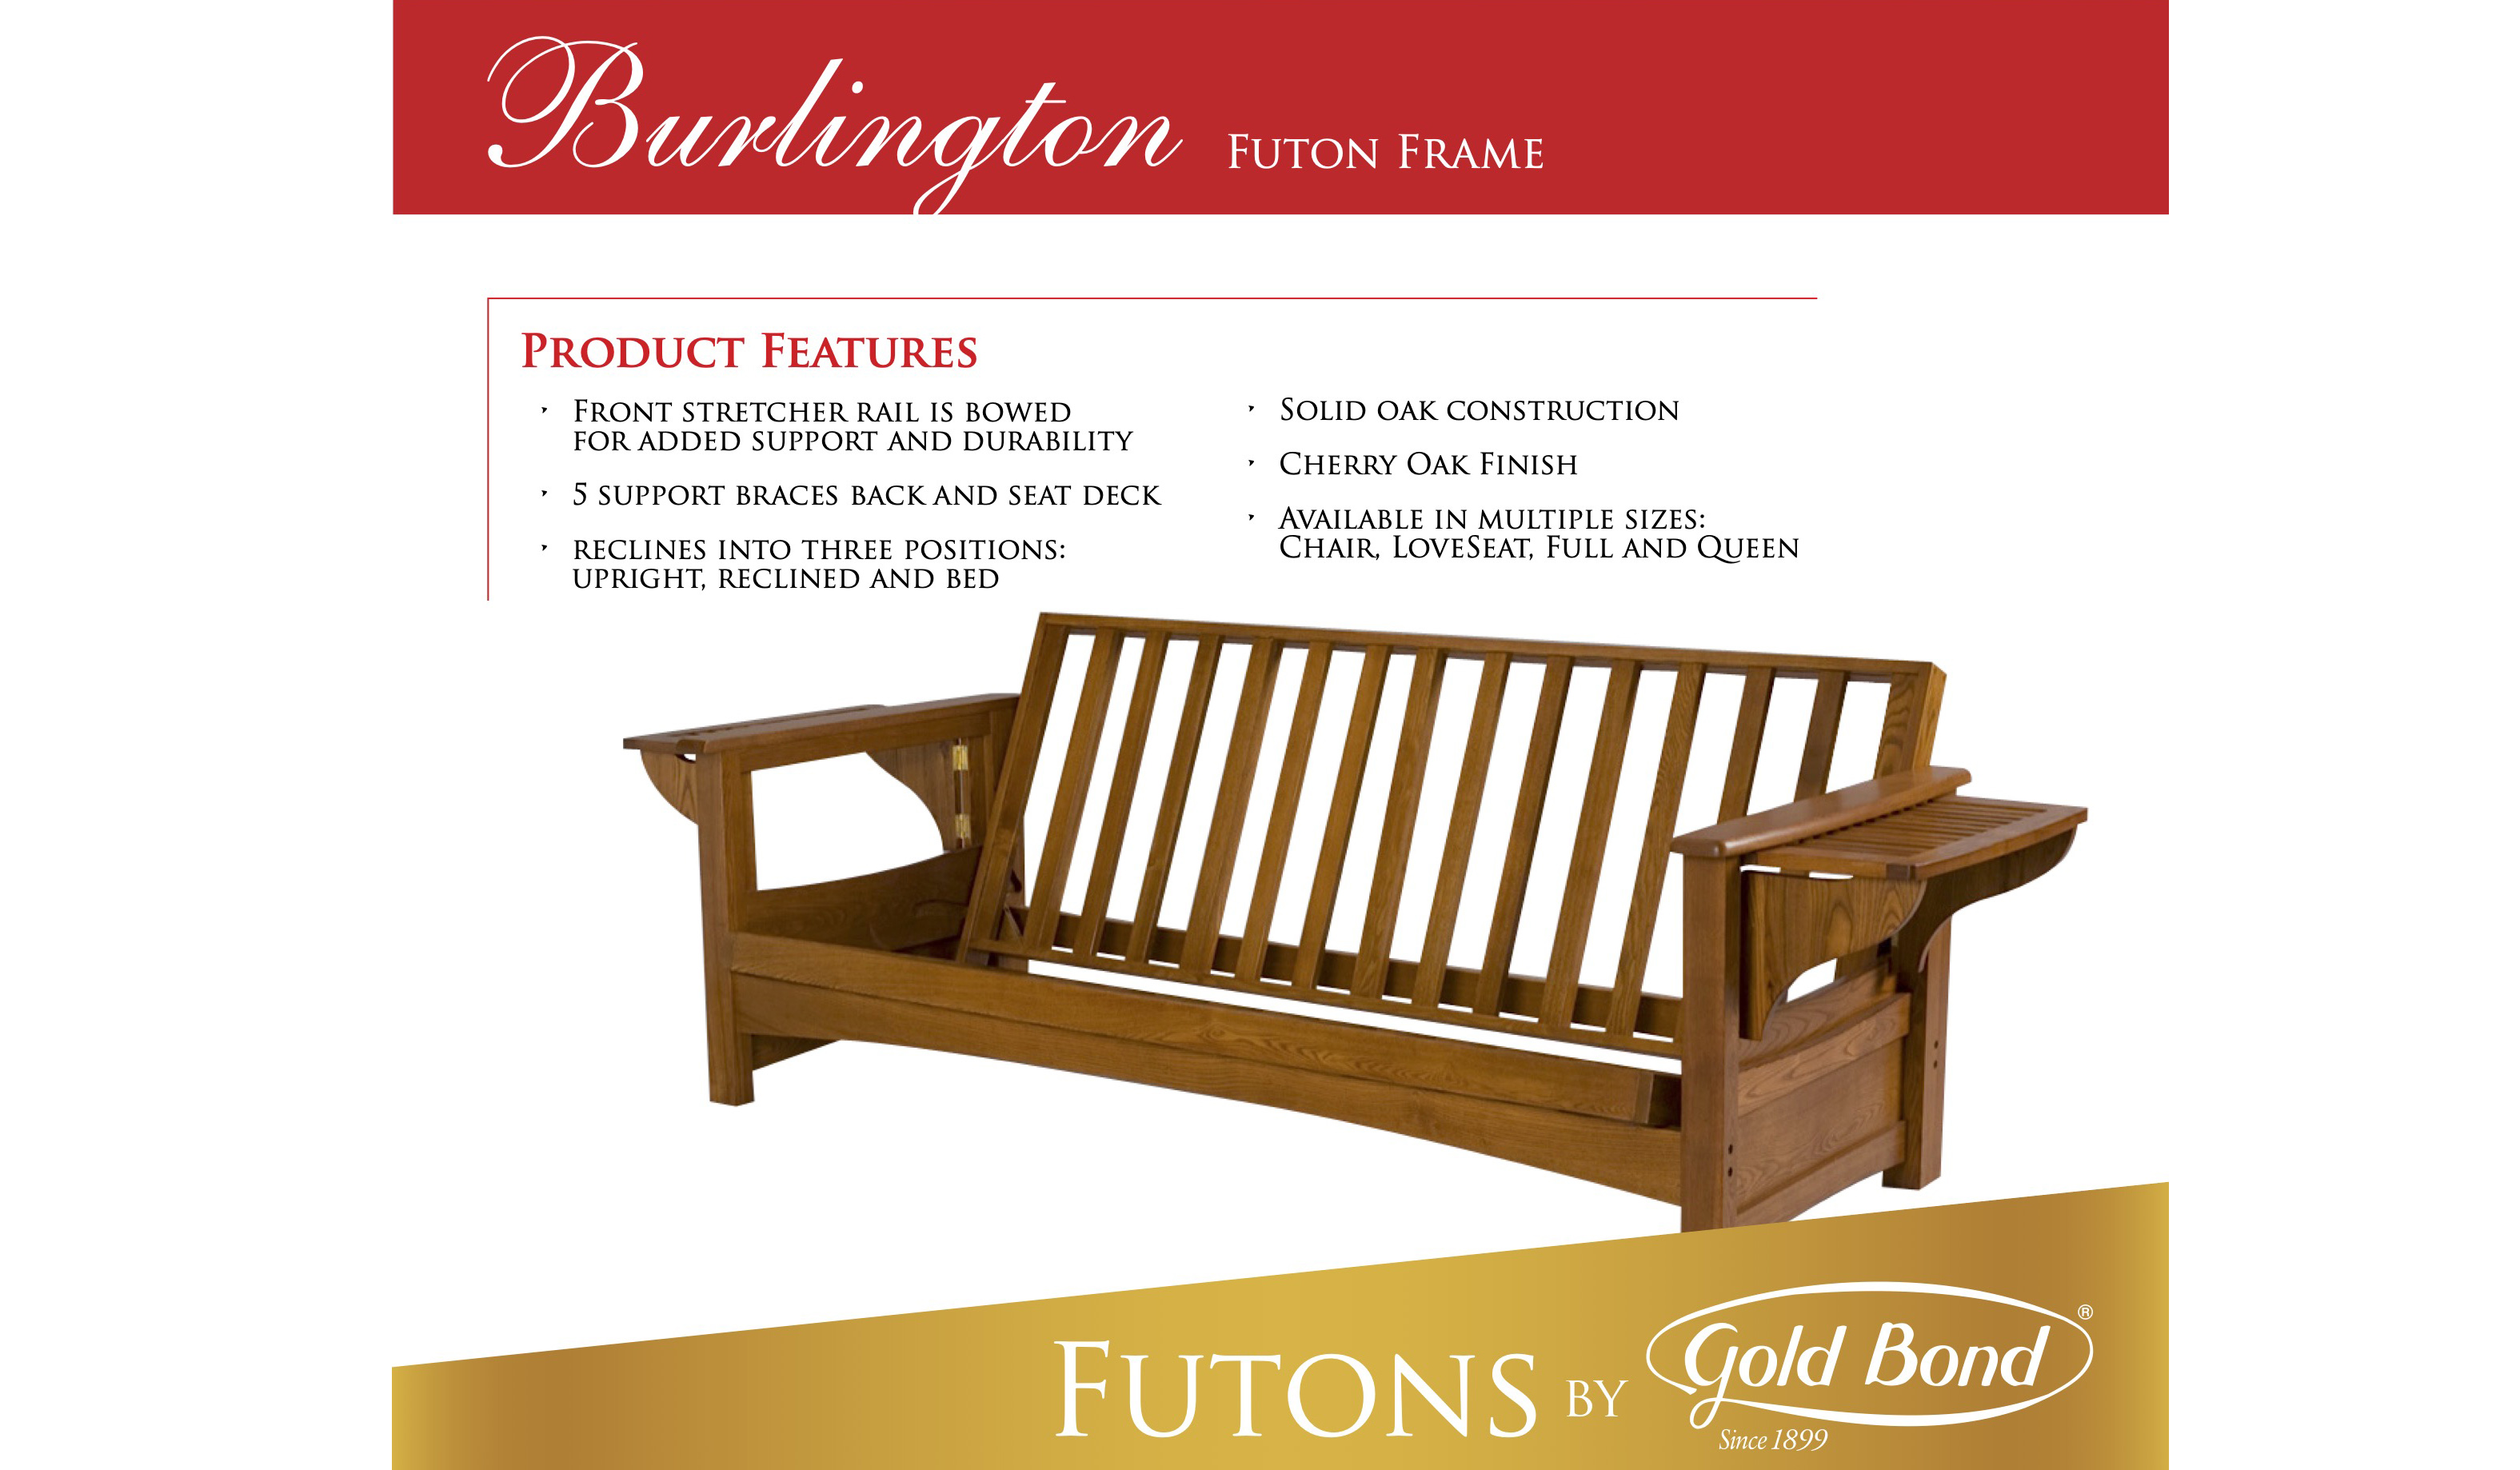 Burlington futon